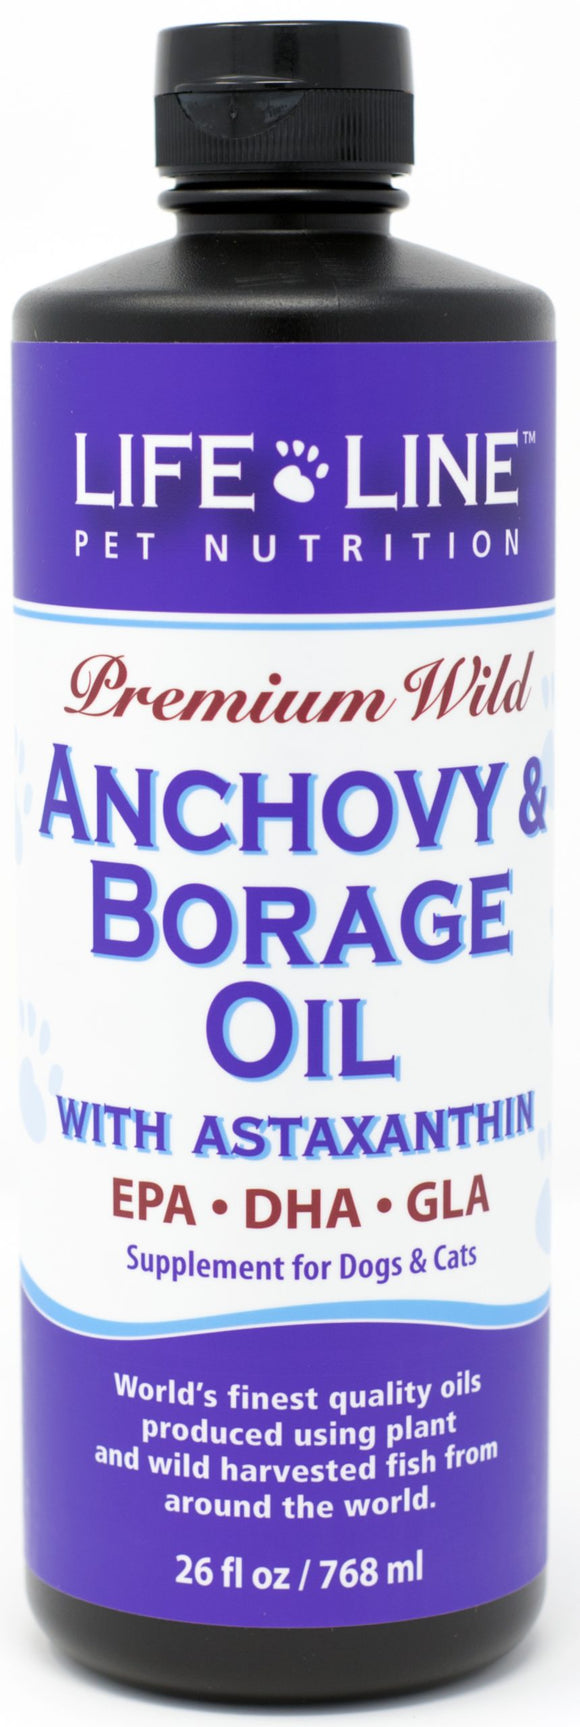 Lifeline Wild Anchovy & Borage Oil 16.5oz*